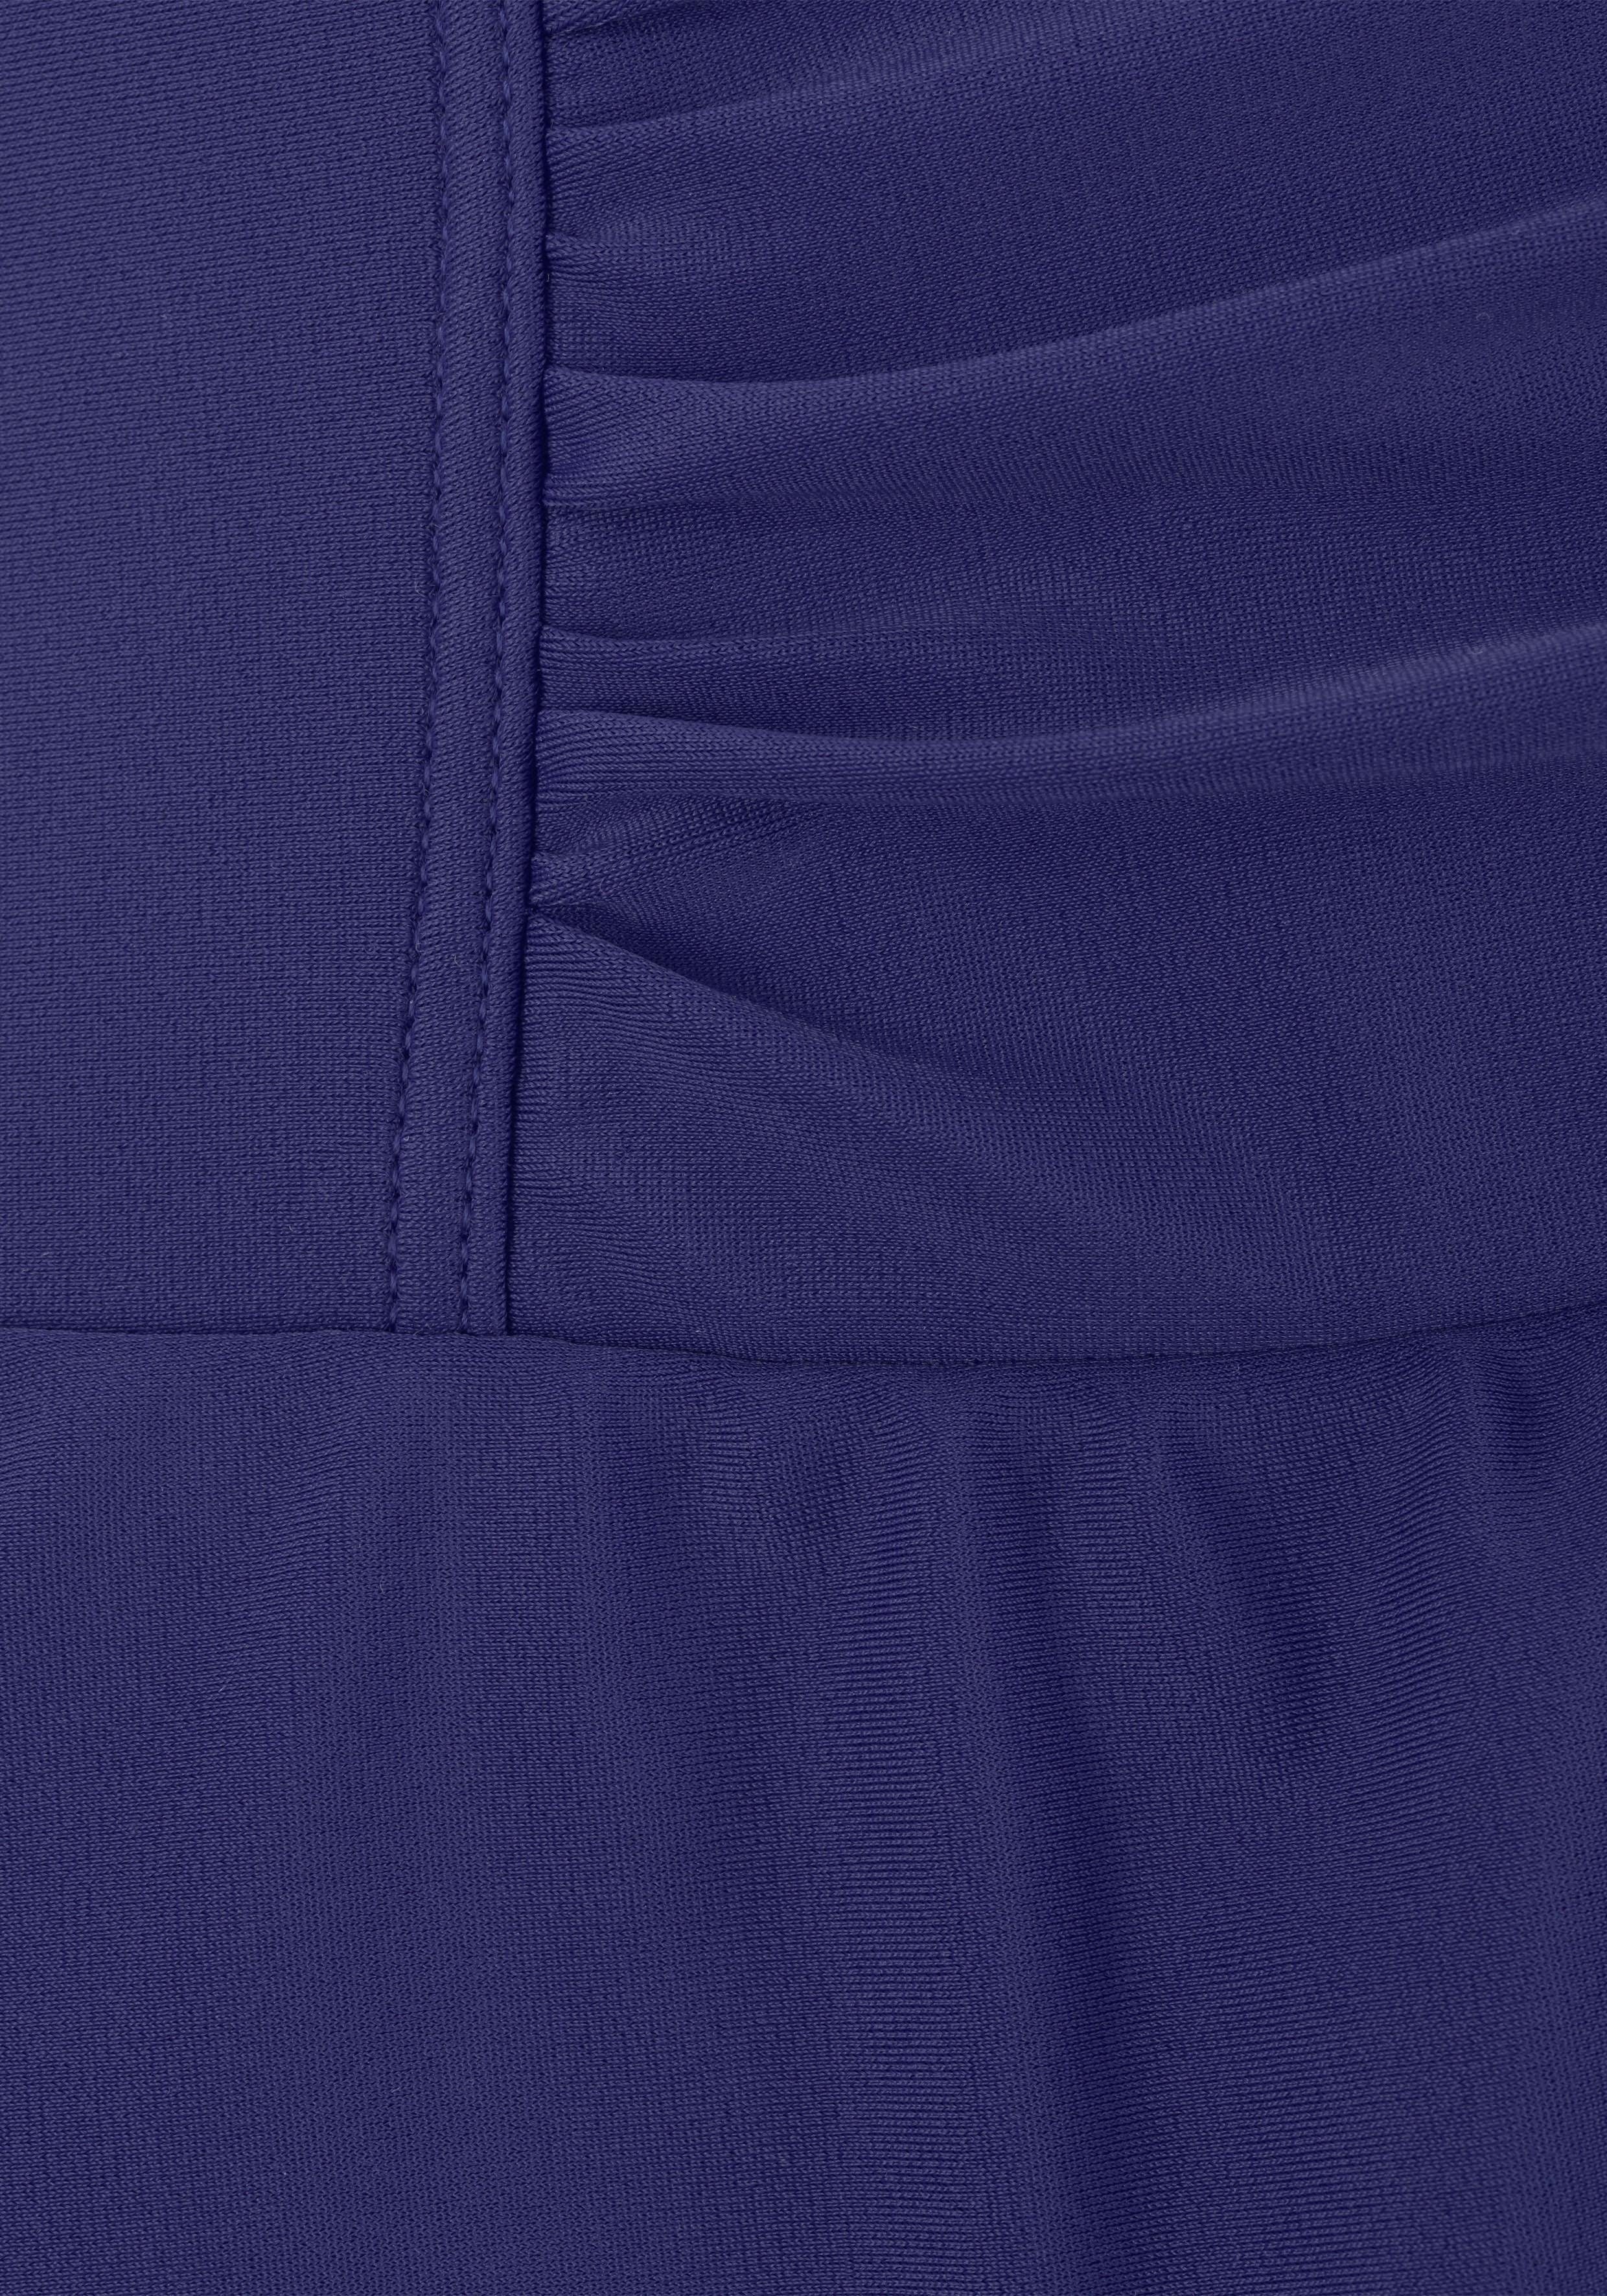 LASCANA blau Raffungen modischen Shaping-Effekt und Badekleid mit